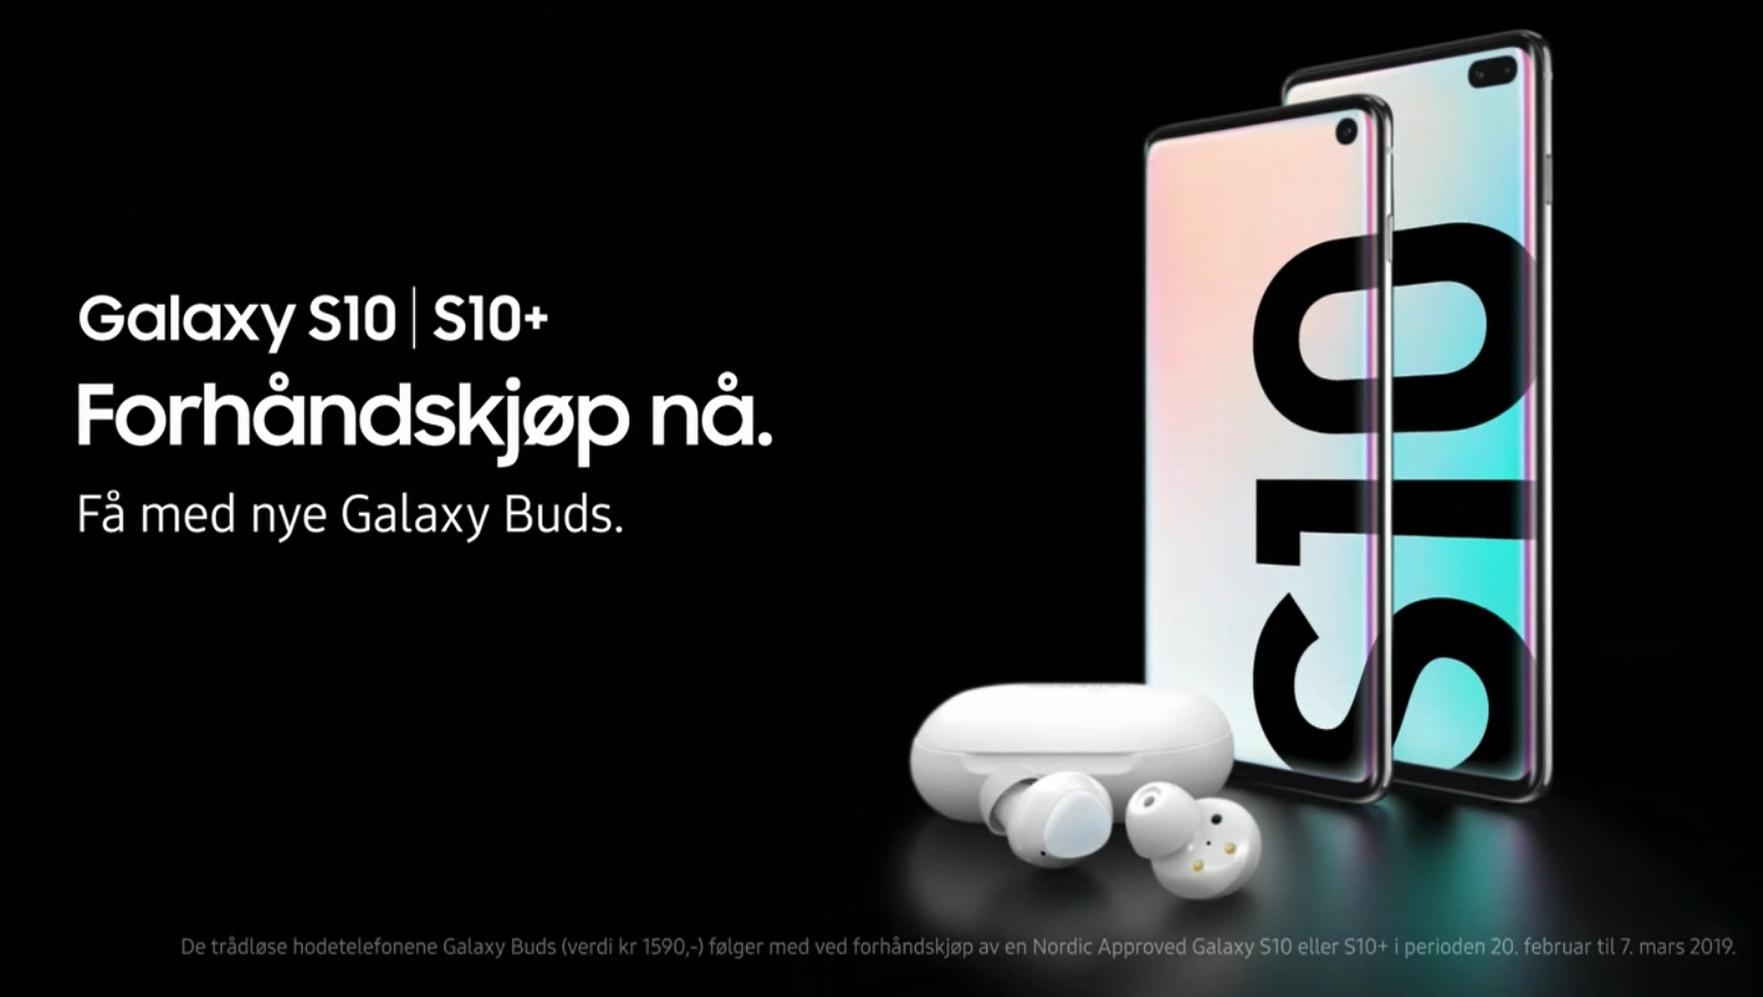 Lỡ làm lộ hình ảnh, Samsung thả trôi đoạn quảng cáo về Galaxy S10 ngay trên truyền hình